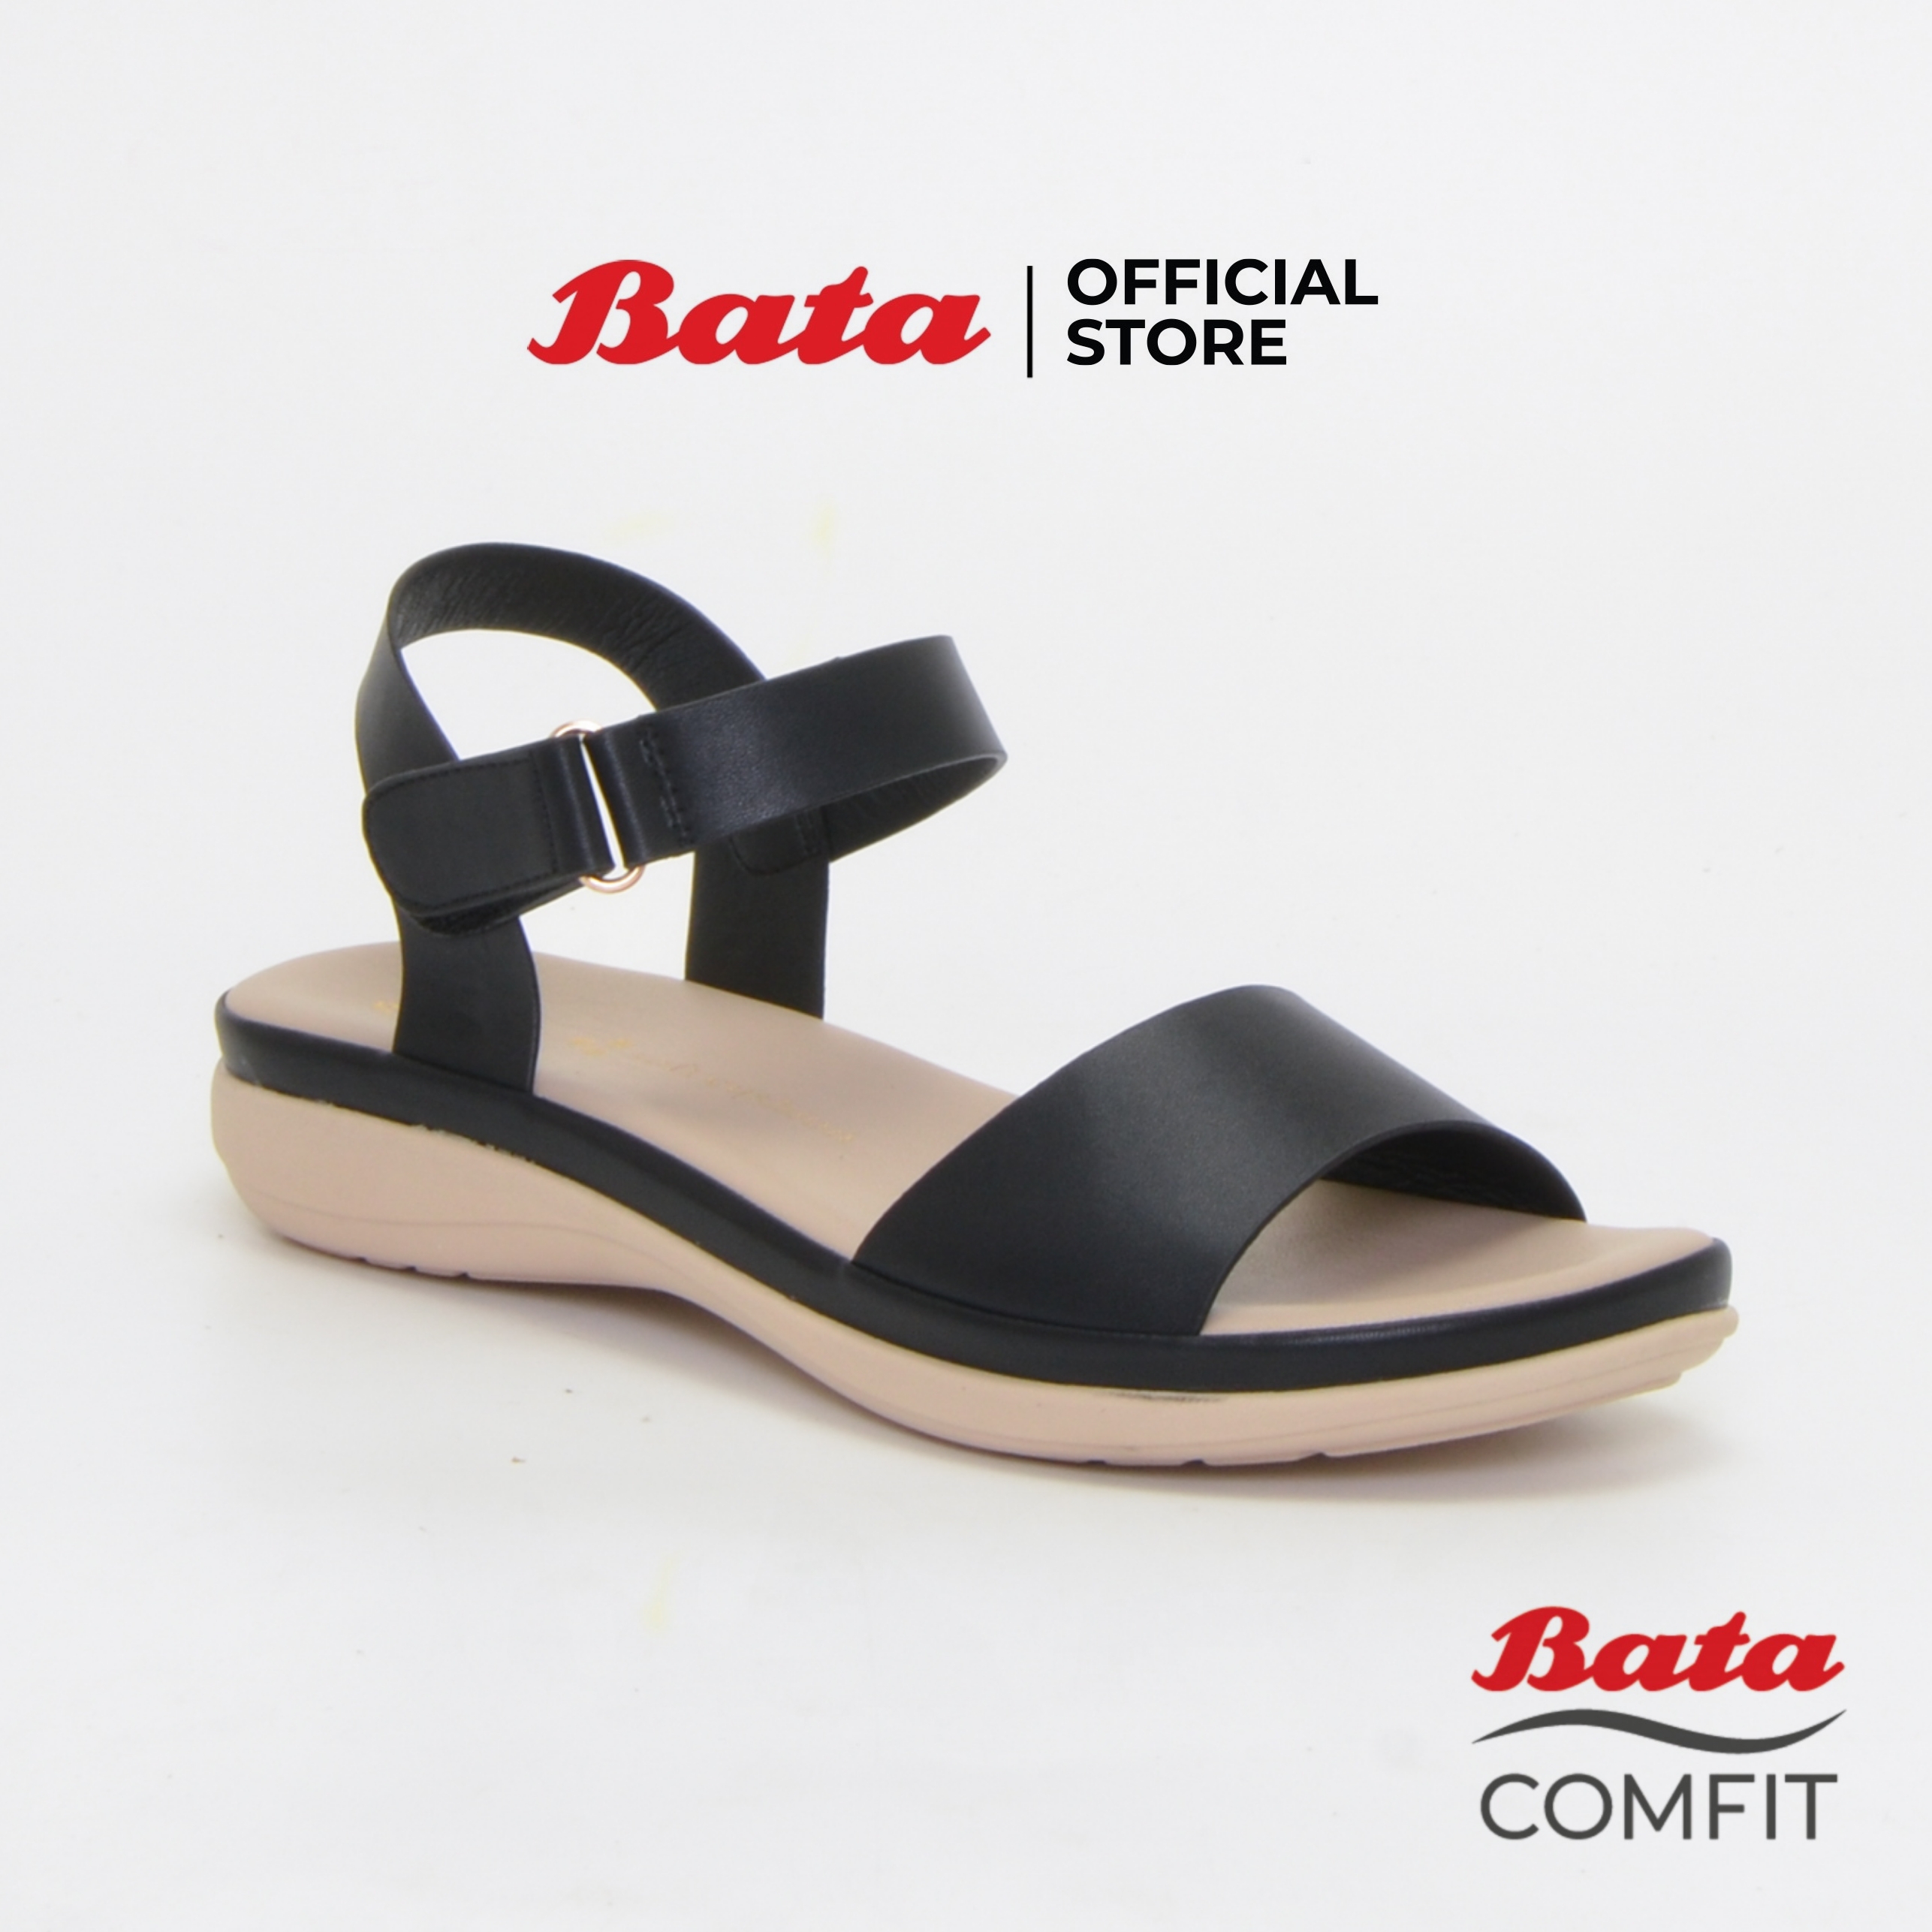 Bata Comfit Women's Comfort Sandals รองเท้าเพื่อสุขภาพ รองเท้ารัดส้นผู้หญิง รุ่น Pancy สีดำ 6616715